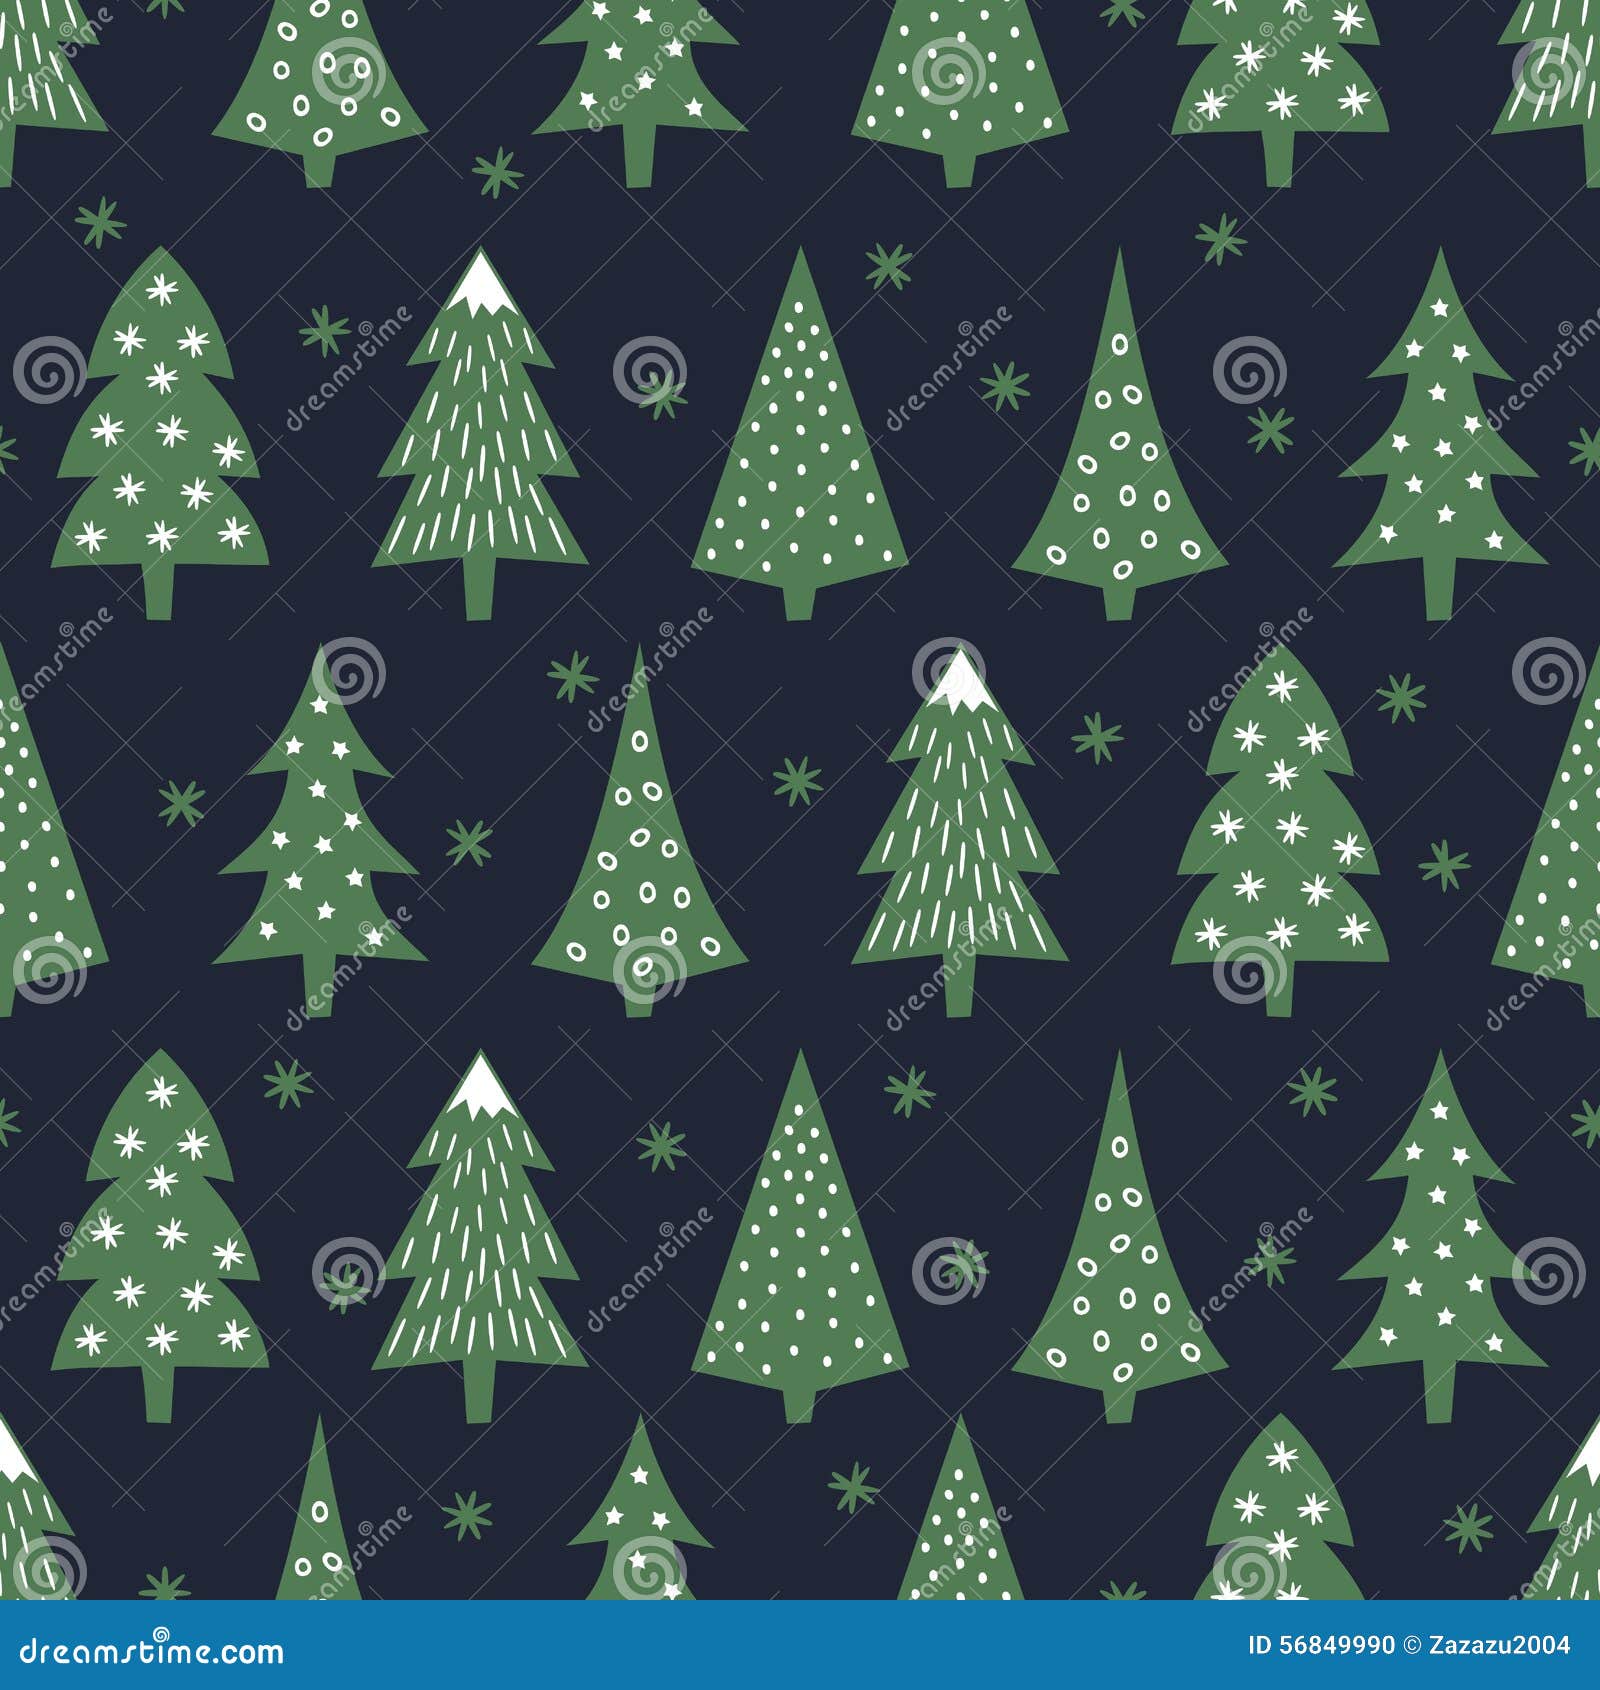 simple seamless retro christmas pattern - varied xmas trees and snowflakes.